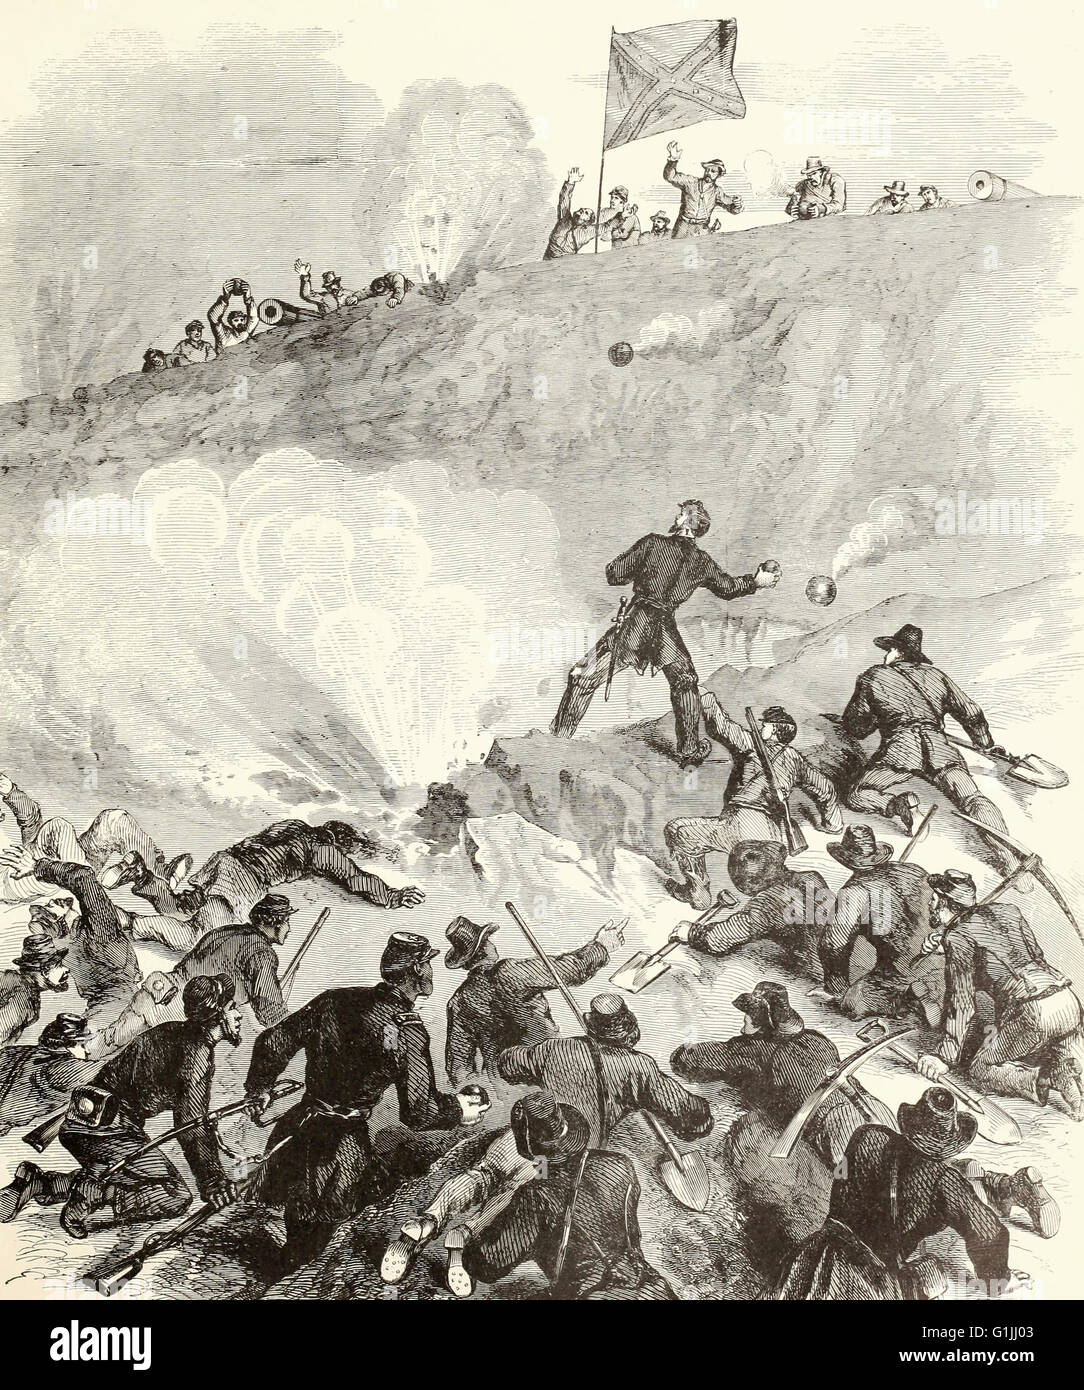 Belagerung von Vicksburg - General Sherman Kampf mit Handgranaten, 13. Juni 1863. USA Bürgerkrieg Stockfoto